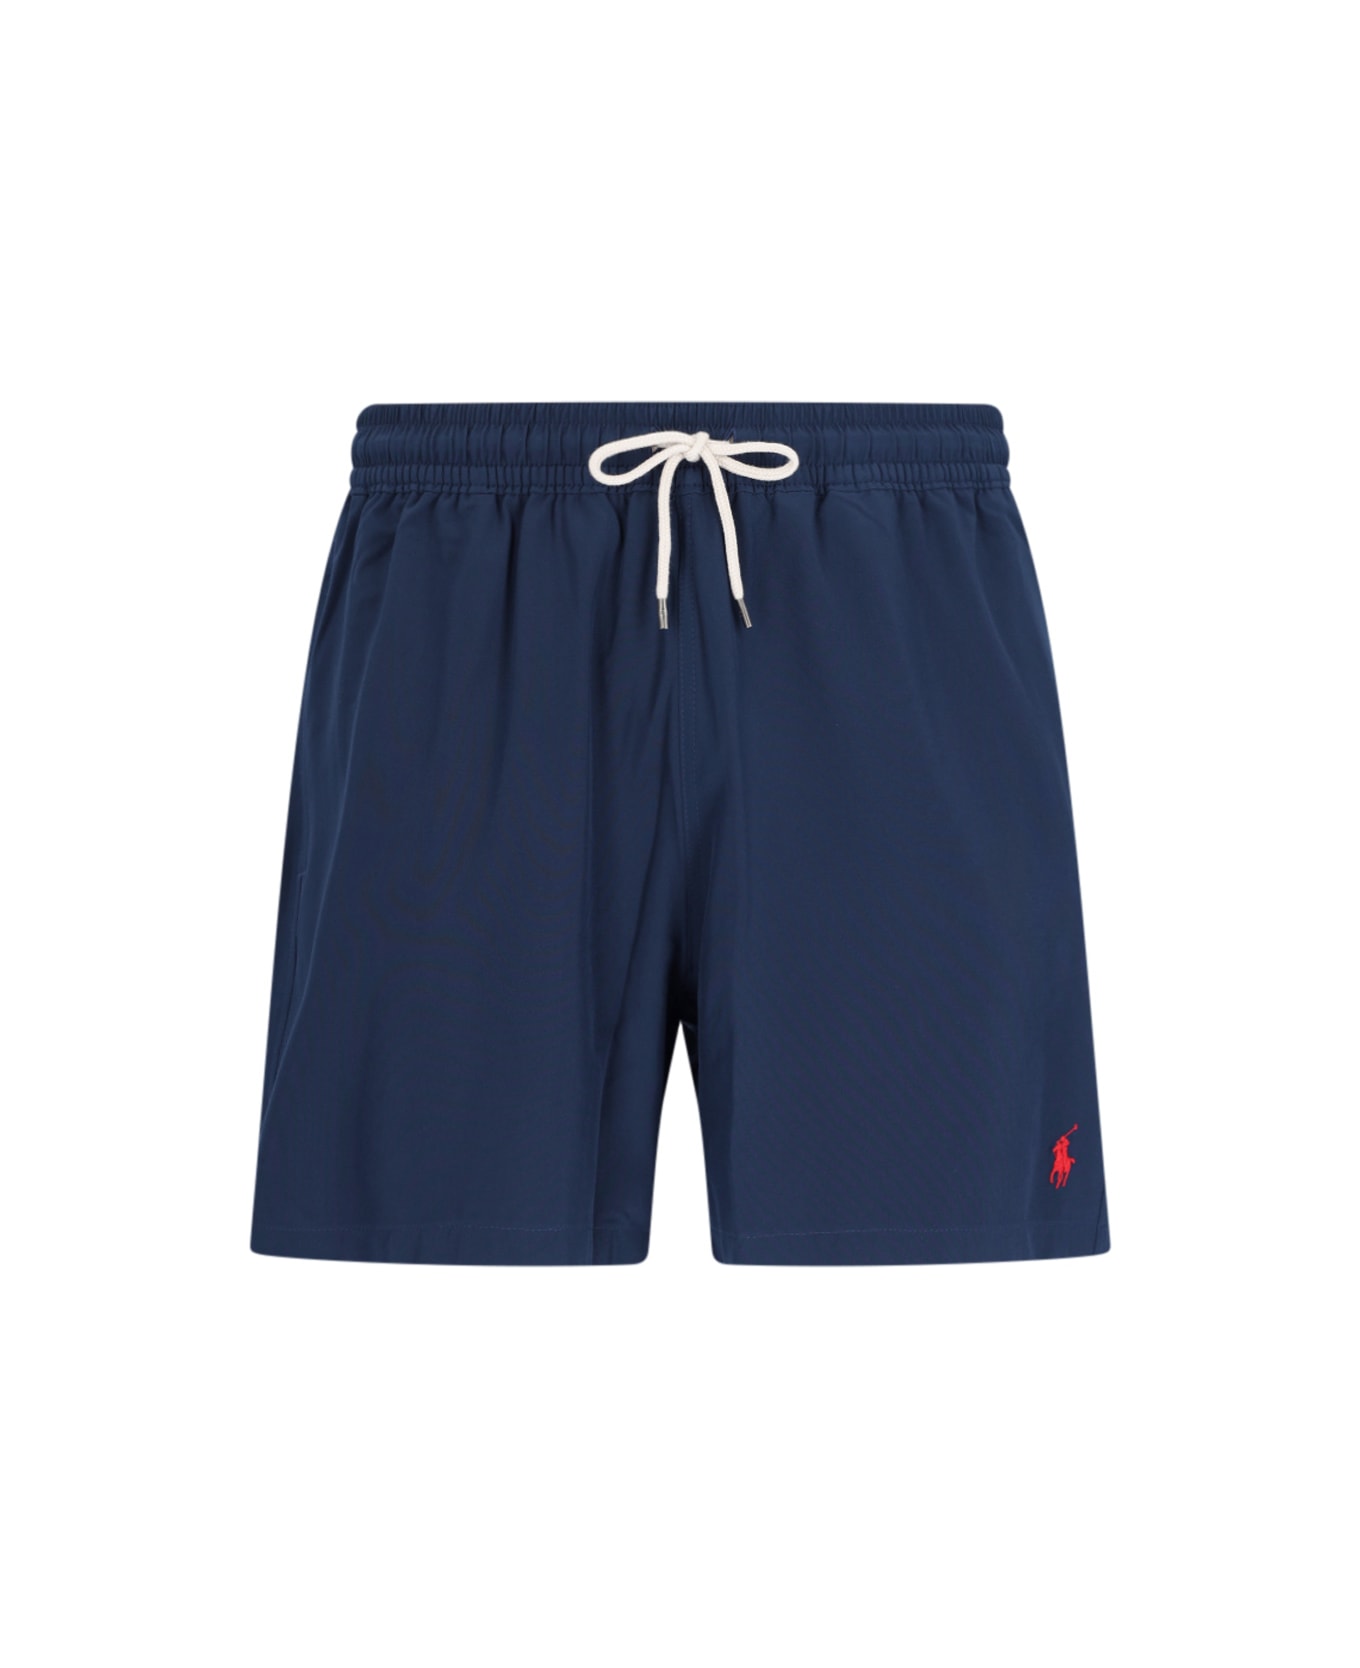 Polo Ralph Lauren Swim Shorts Swimwear - NEWPORT NAVY